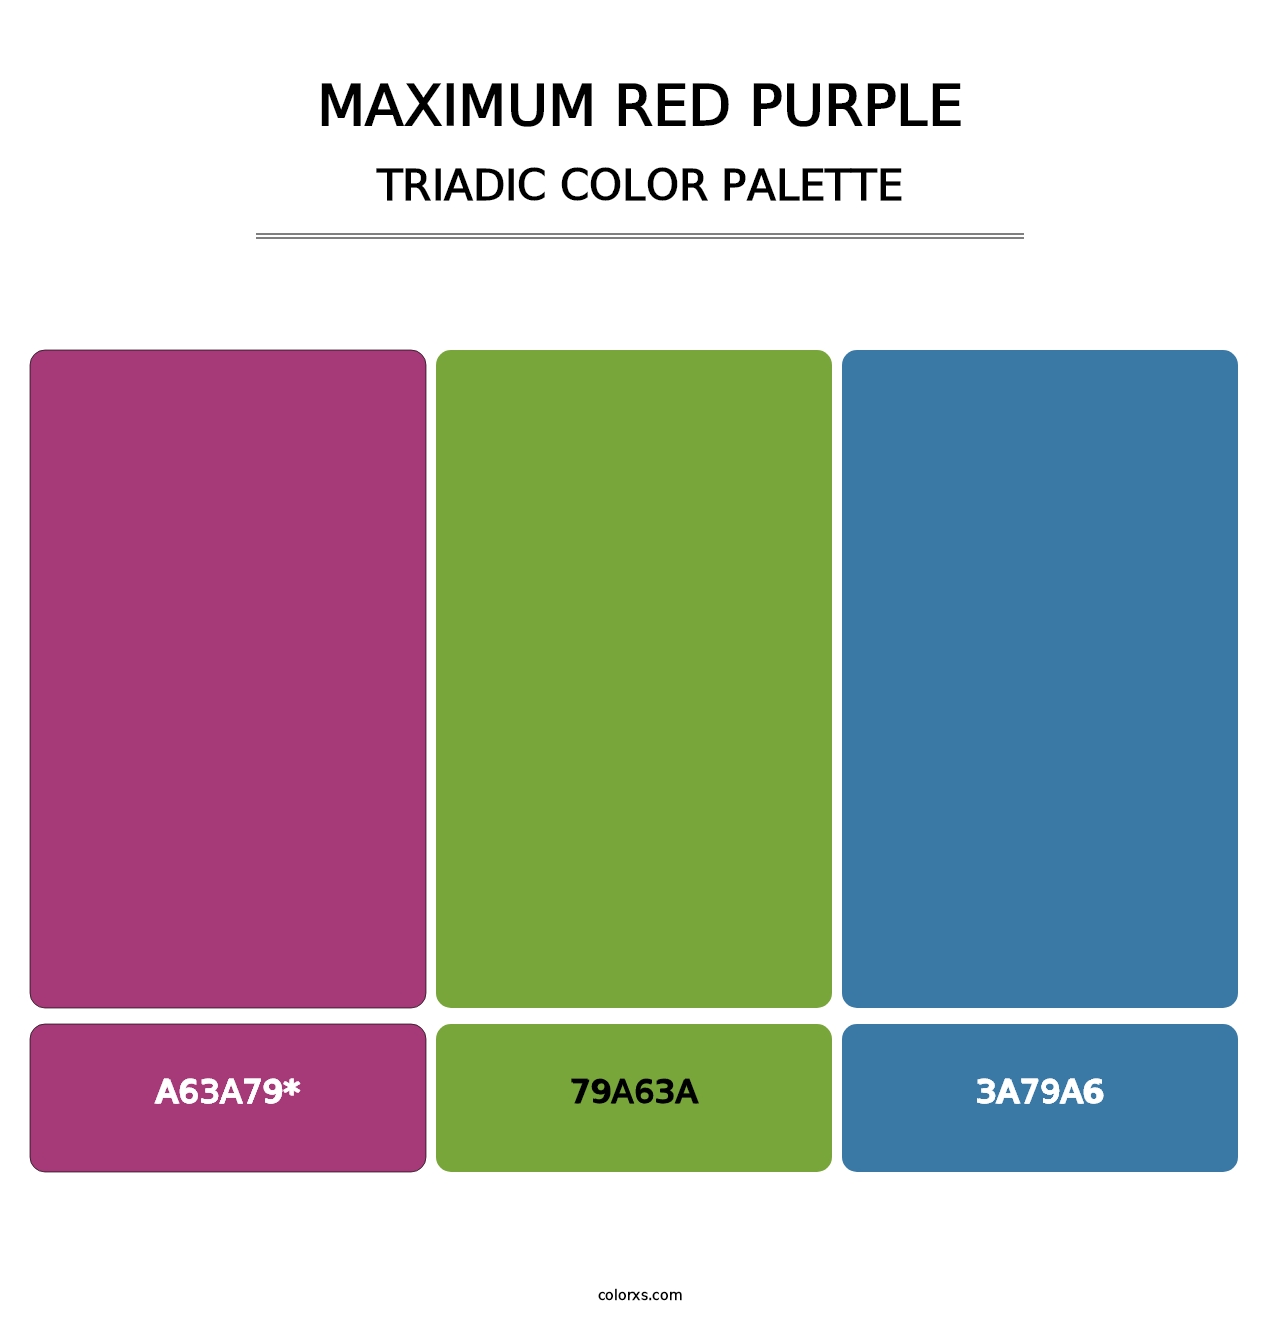 Maximum Red Purple - Triadic Color Palette